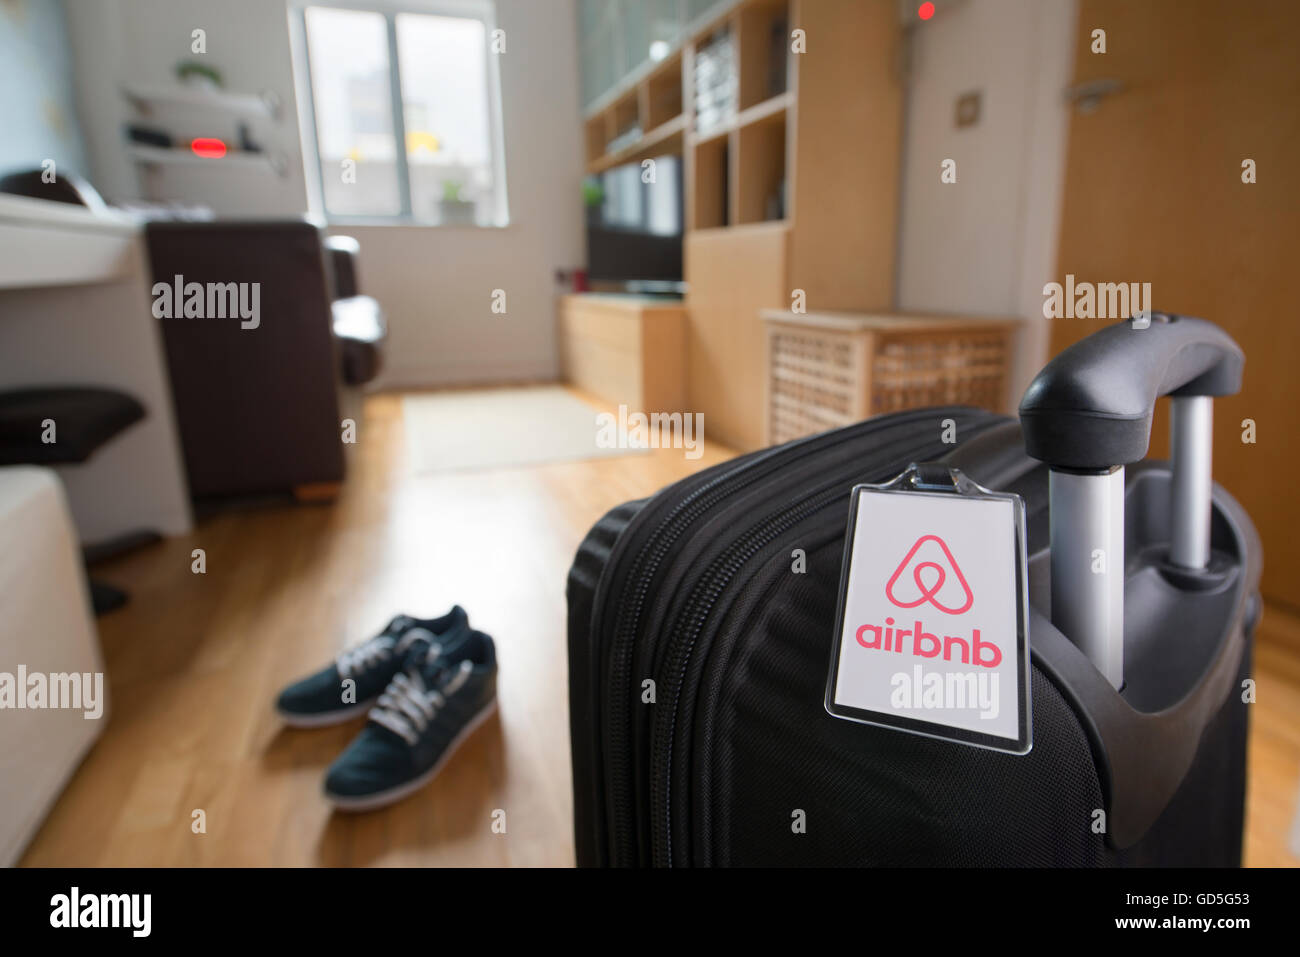 Una maleta con una etiqueta de equipaje marca Airbnb se asienta en un apartamento para alquilar mediante el mercado en línea (sólo para uso editorial). Foto de stock